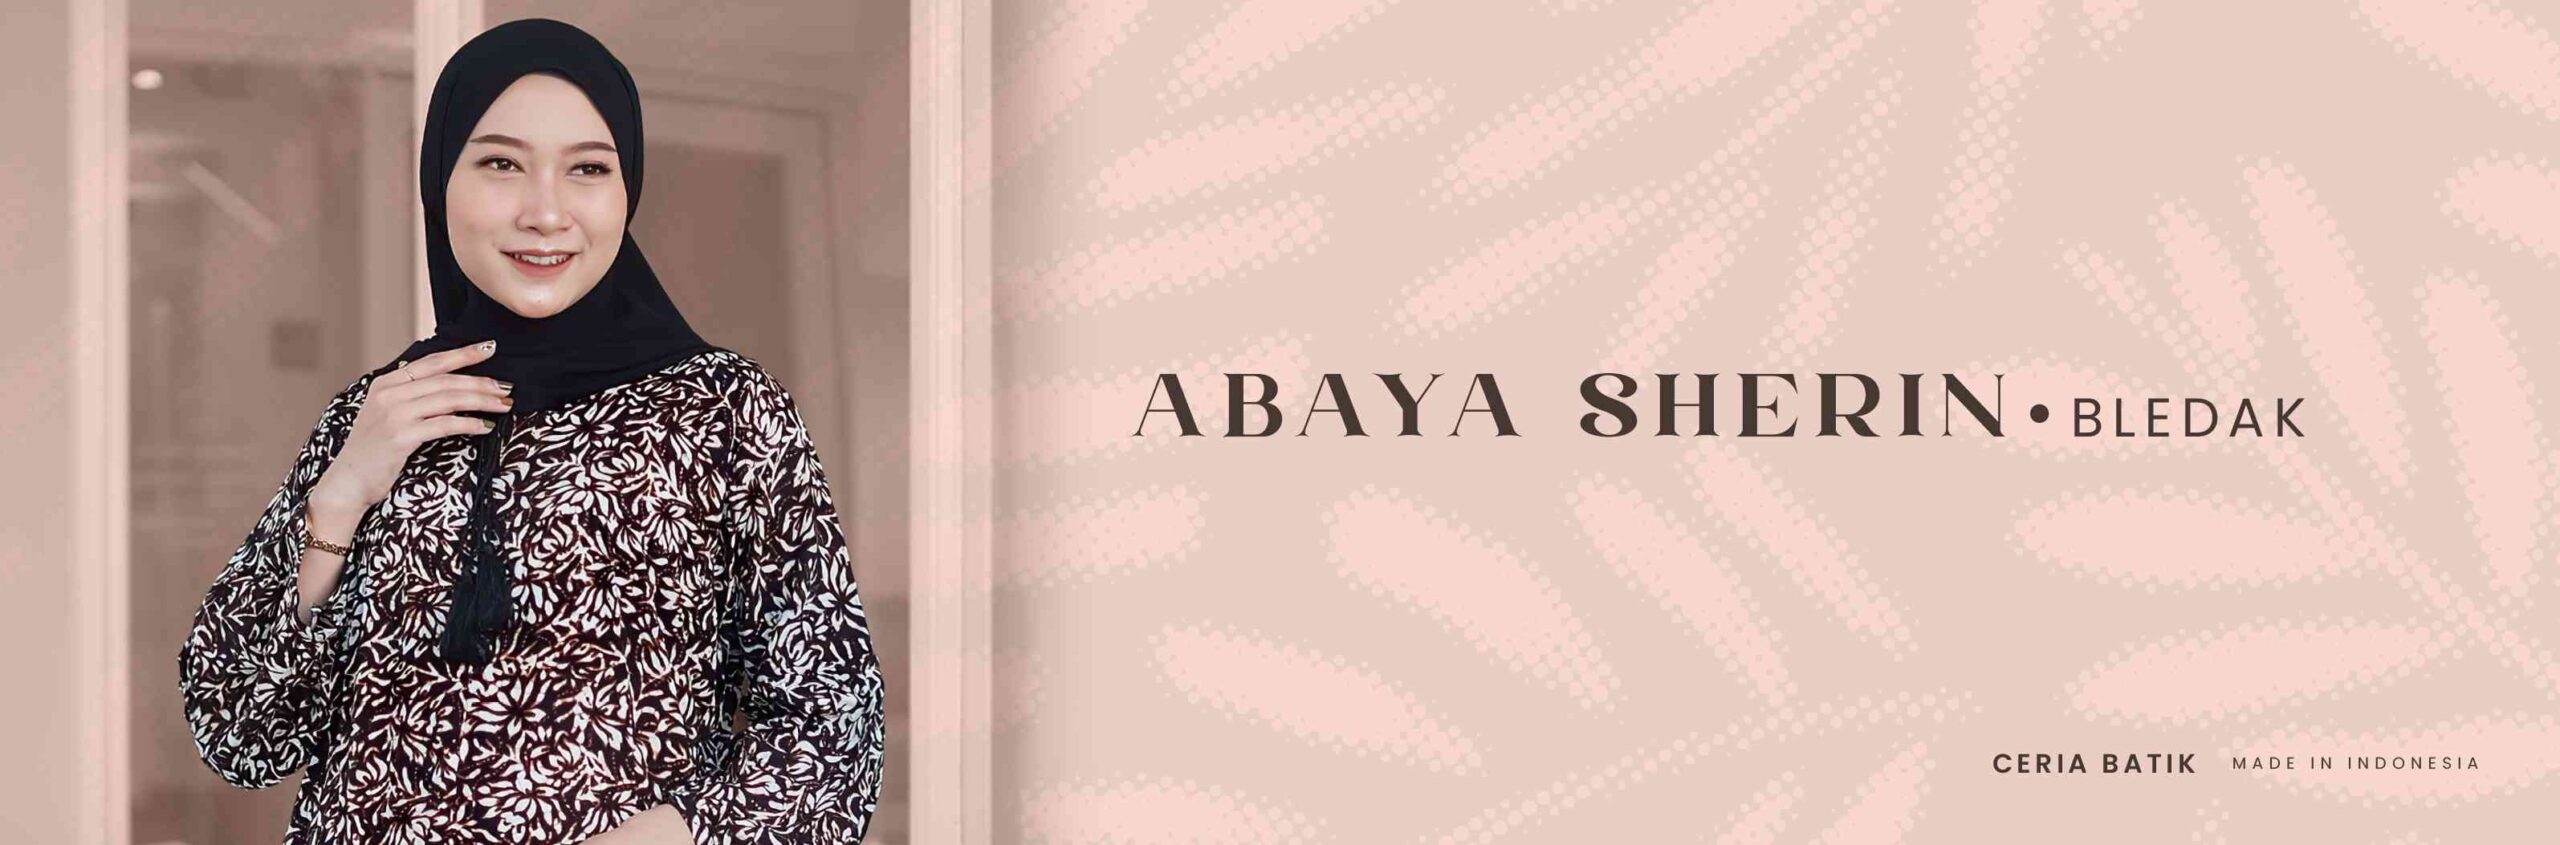 7. ABAYA SHERIN - BLEDAK